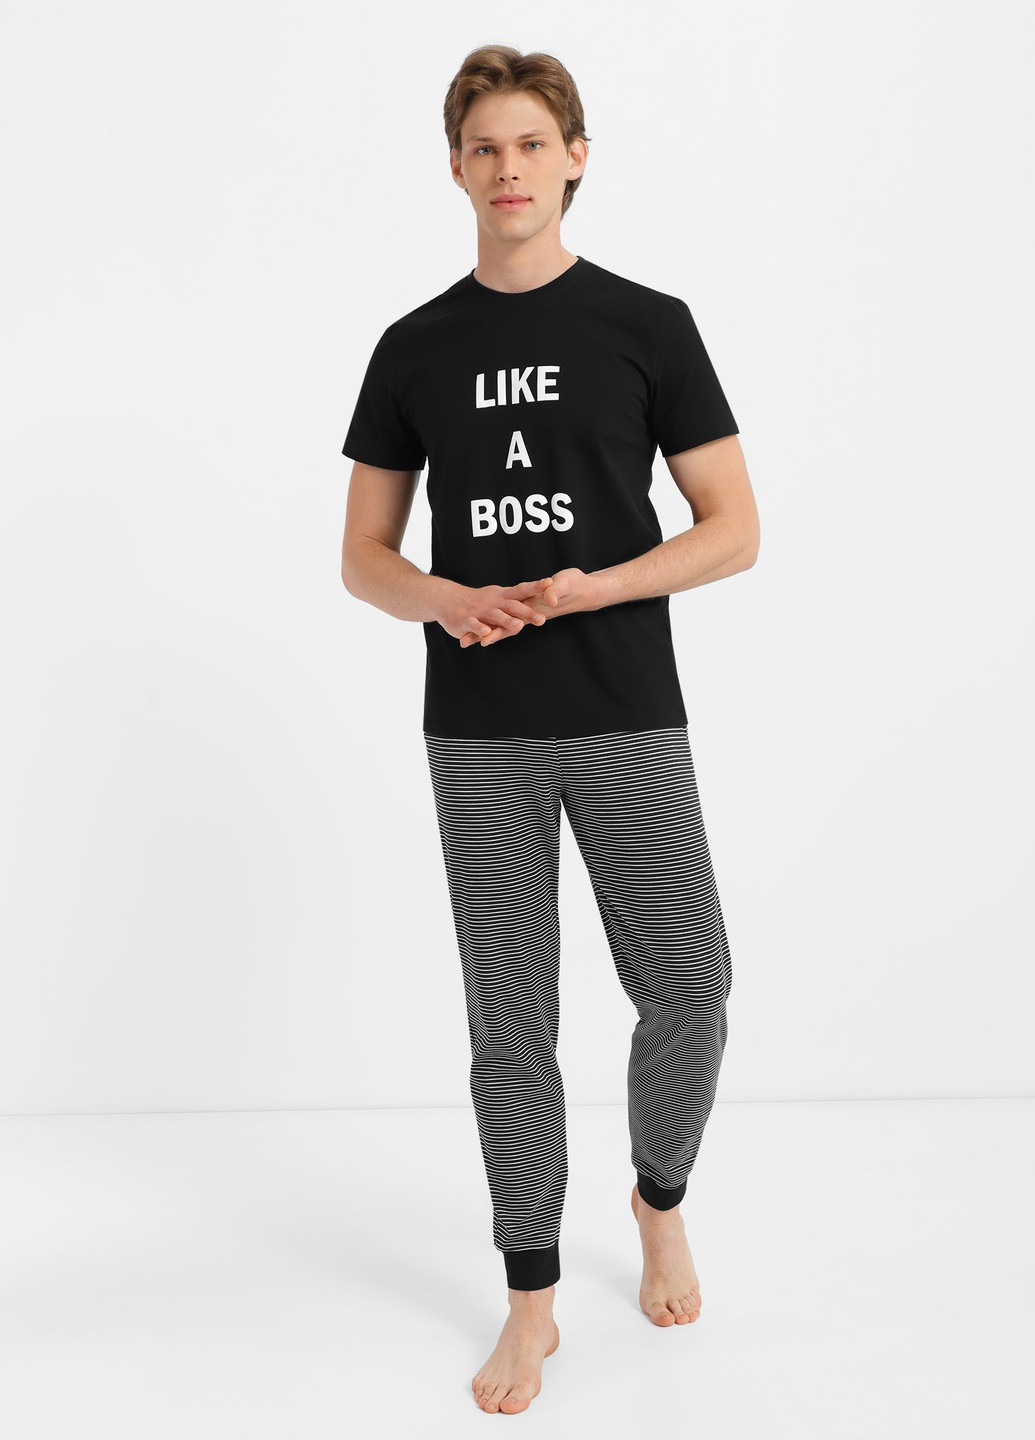 Пижама Роза футболка + брюки однотонная чёрная домашняя хлопок